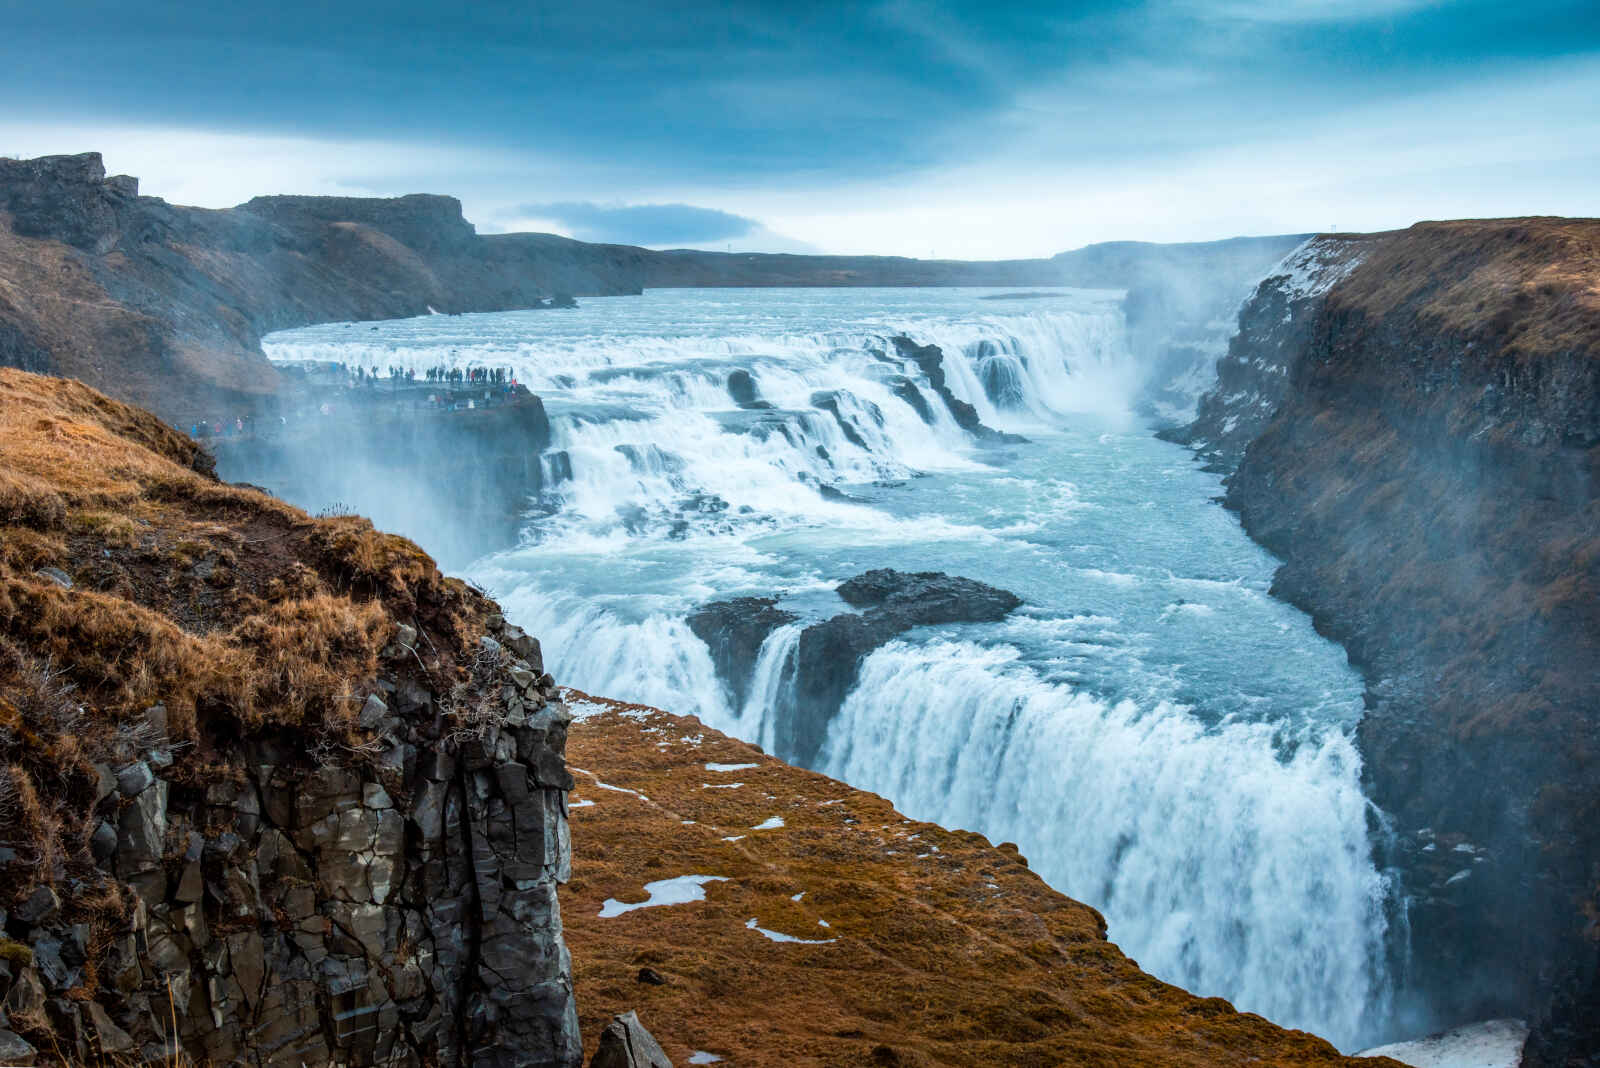 Islande - Autotour Panorama d'Islande